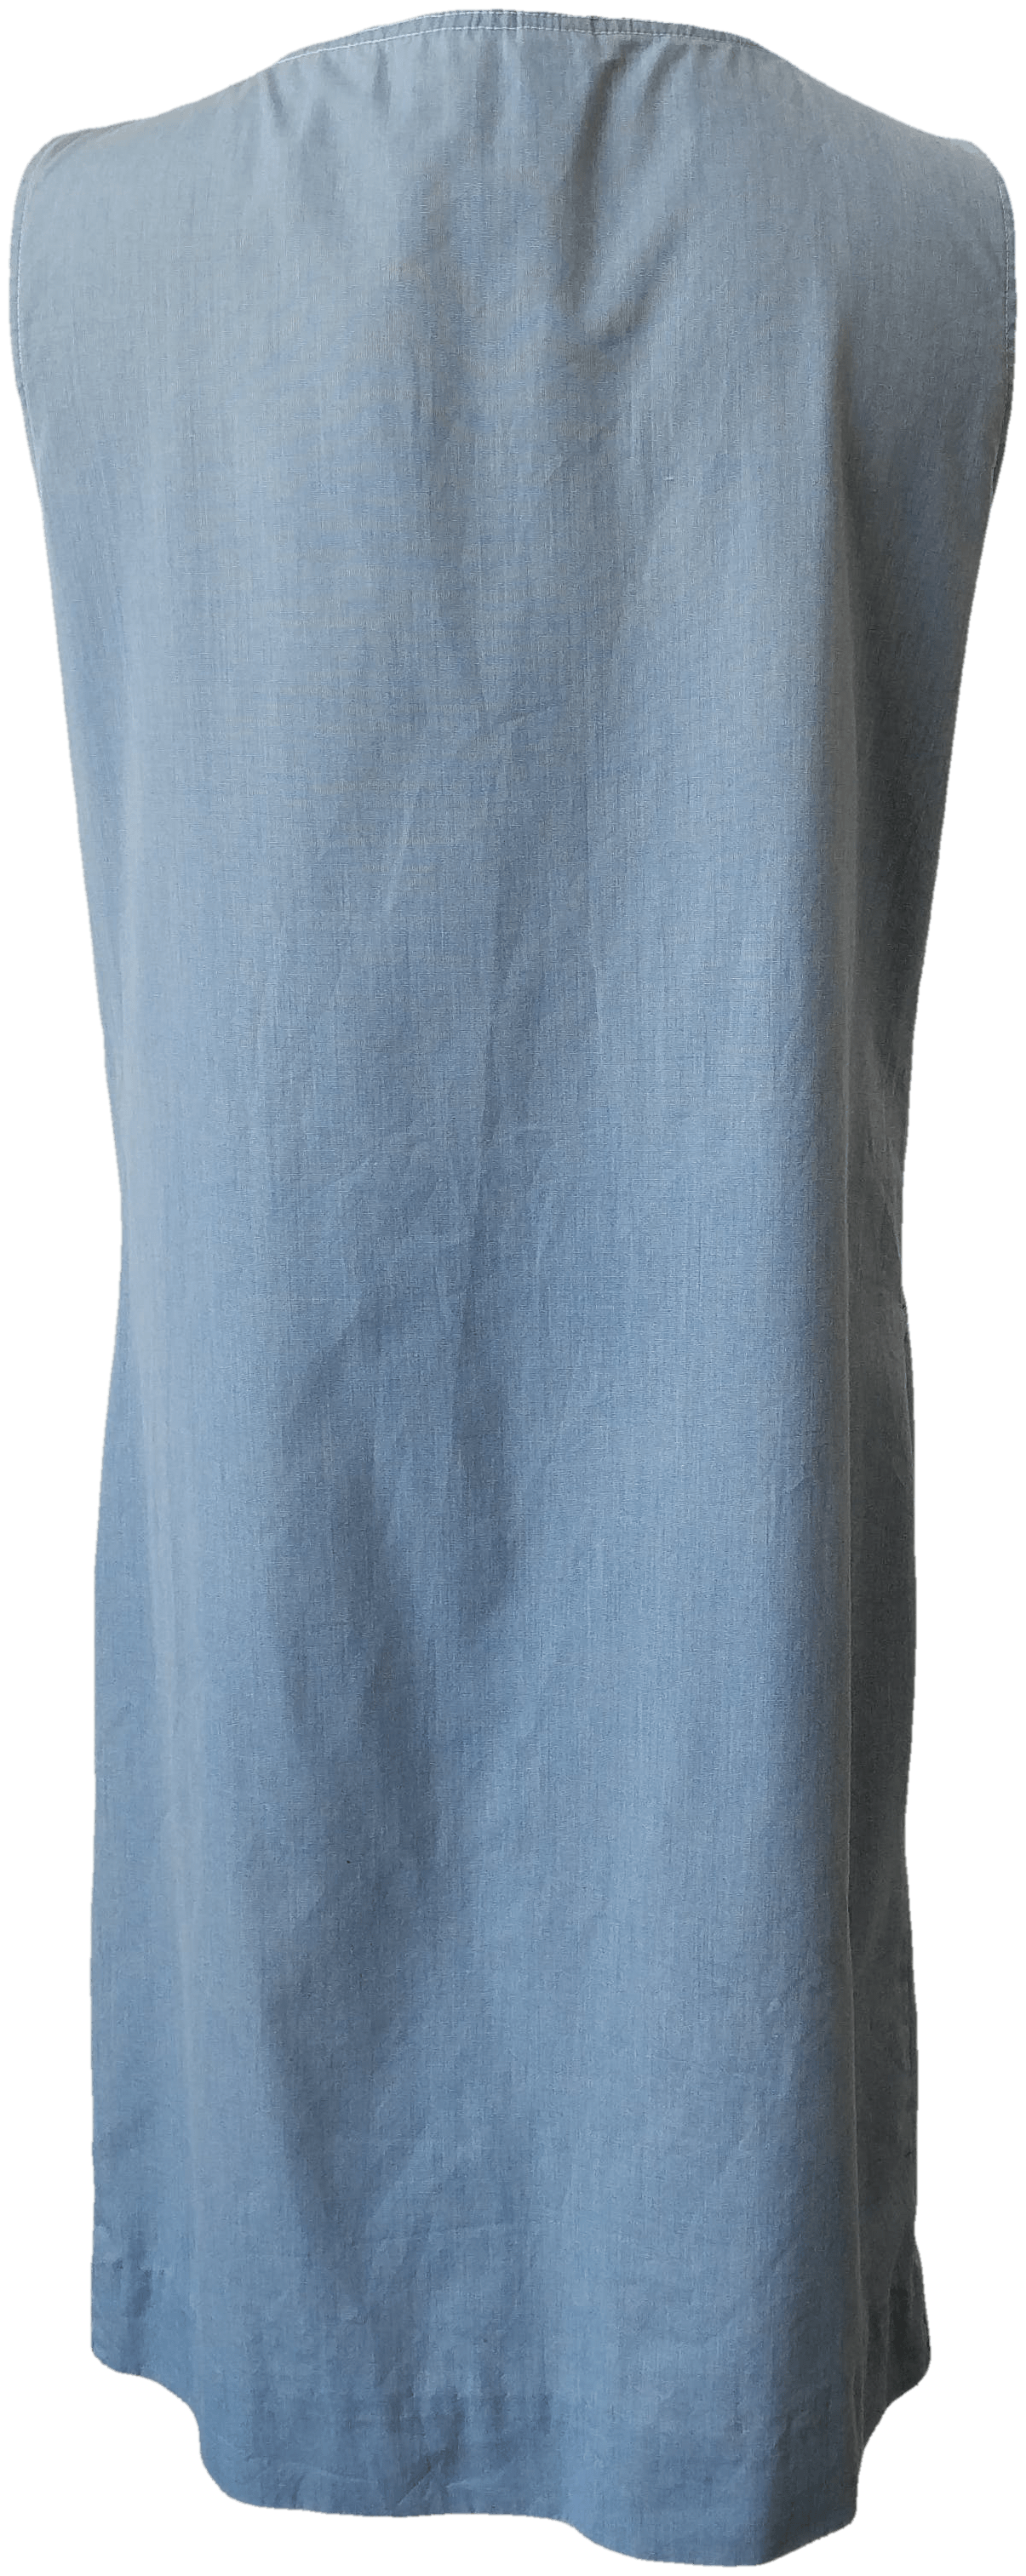 Vintage 60's Blue Shift Dress with Large Side Pockets | Shop THRILLING